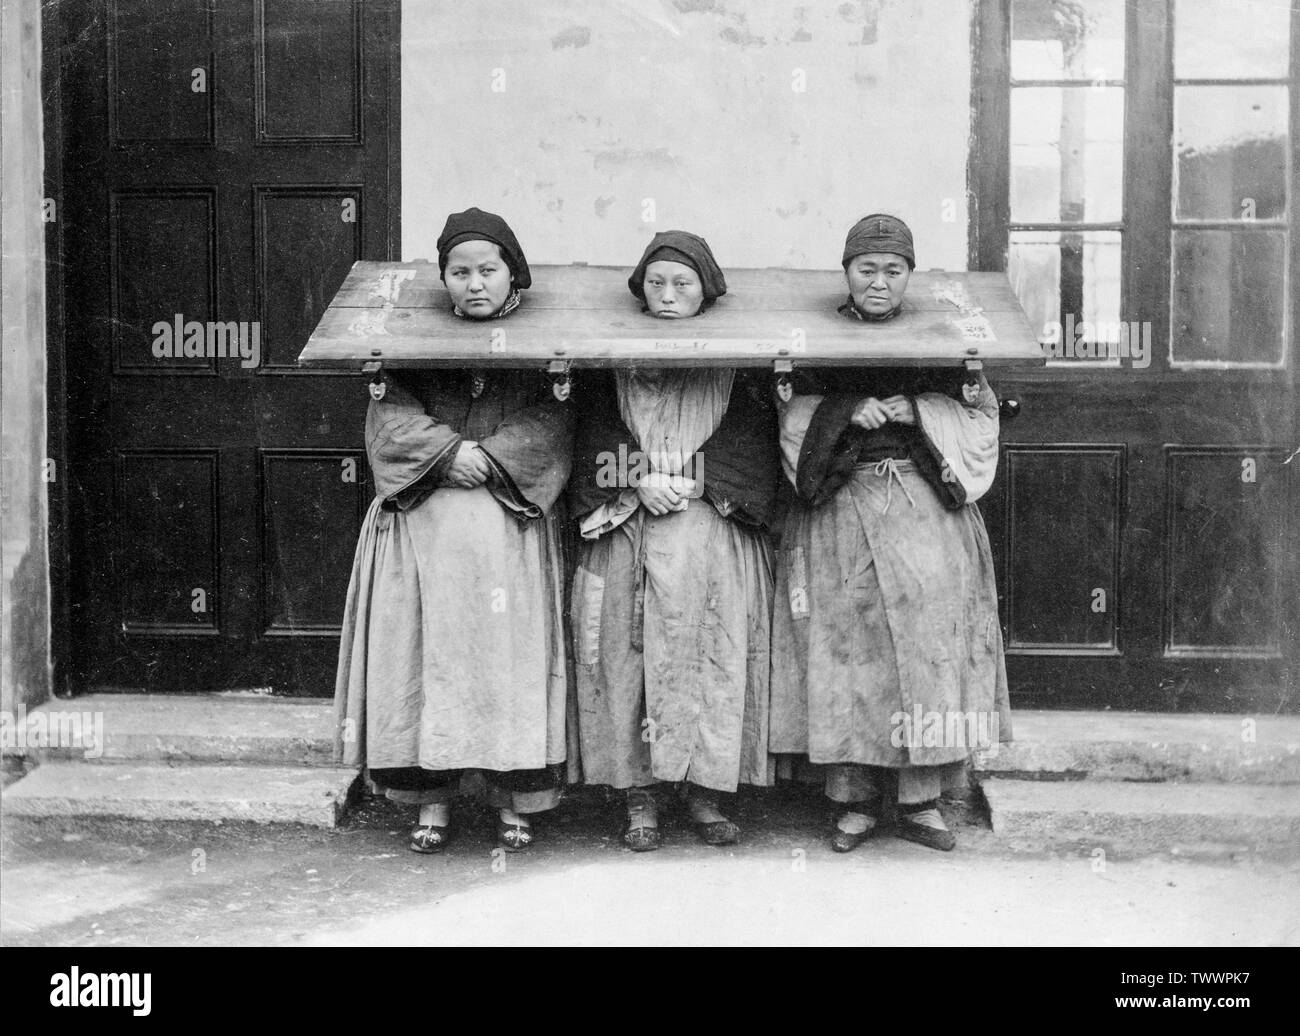 Ein Ende des 19. oder Anfang des 20. Jahrhunderts vintage schwarz-weiß Foto zeigt drei chinesische Frauen in einem Cangue, ein Gerät für die öffentliche Demütigung verwendet oder manchmal in Teilen Ost Asien kann Folter gesperrt. Stockfoto